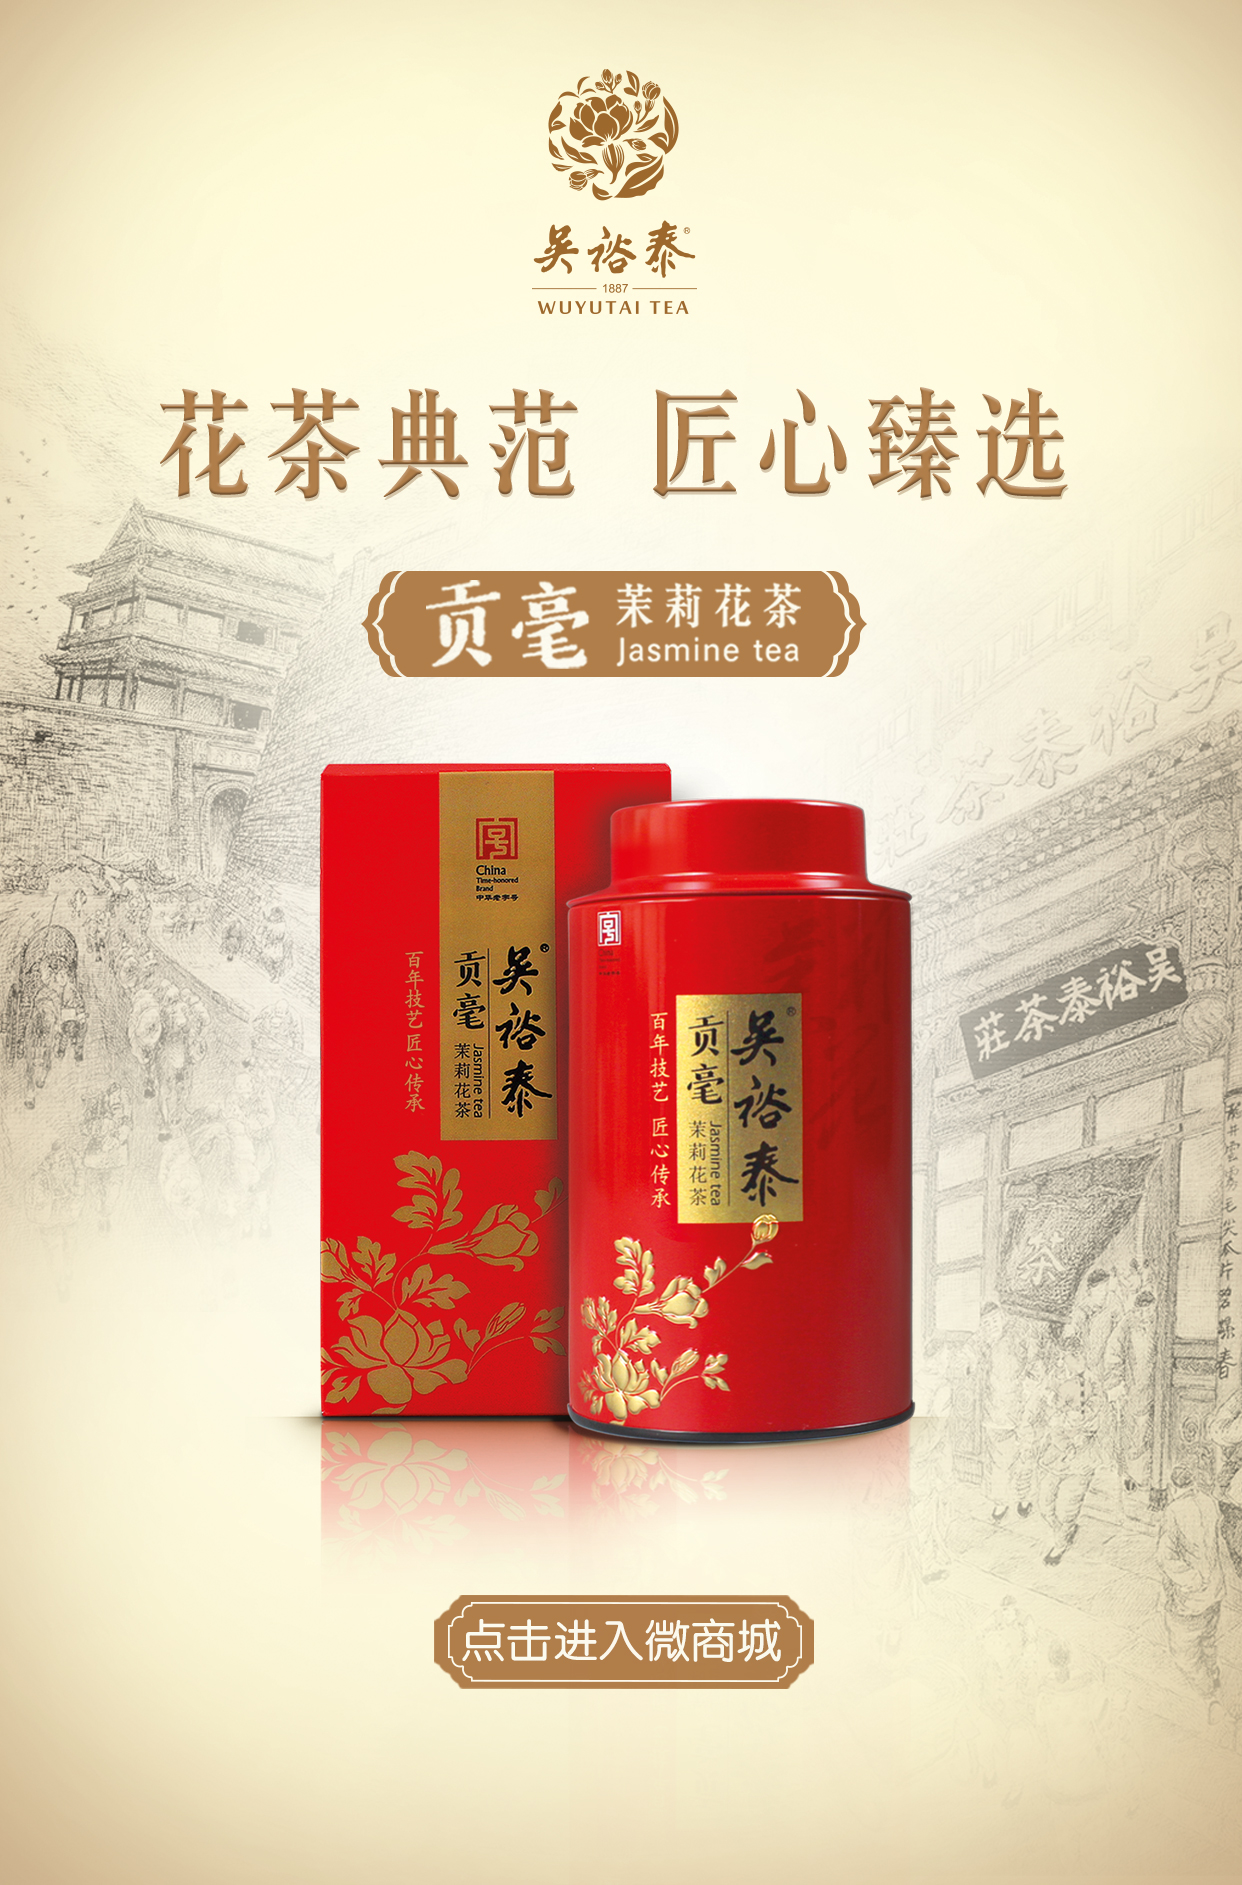 文化期刊 吴裕泰茶业官网 卖老百姓喝得起的放心茶